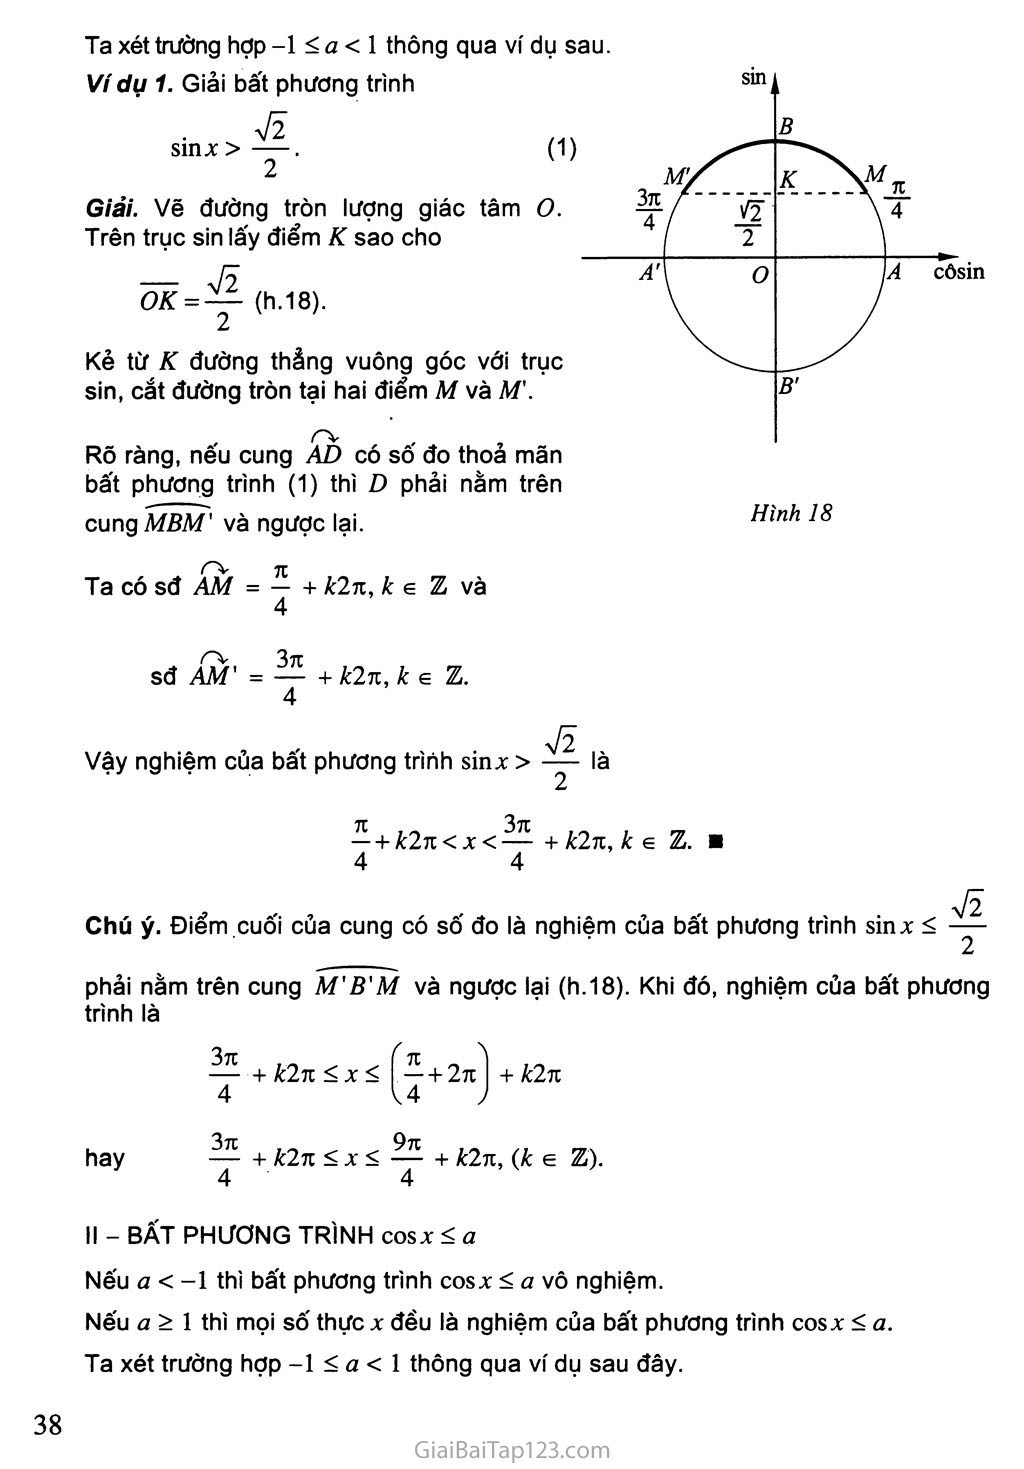 Bài 3. Một số phương trình lượng giác thường gặp trang 10